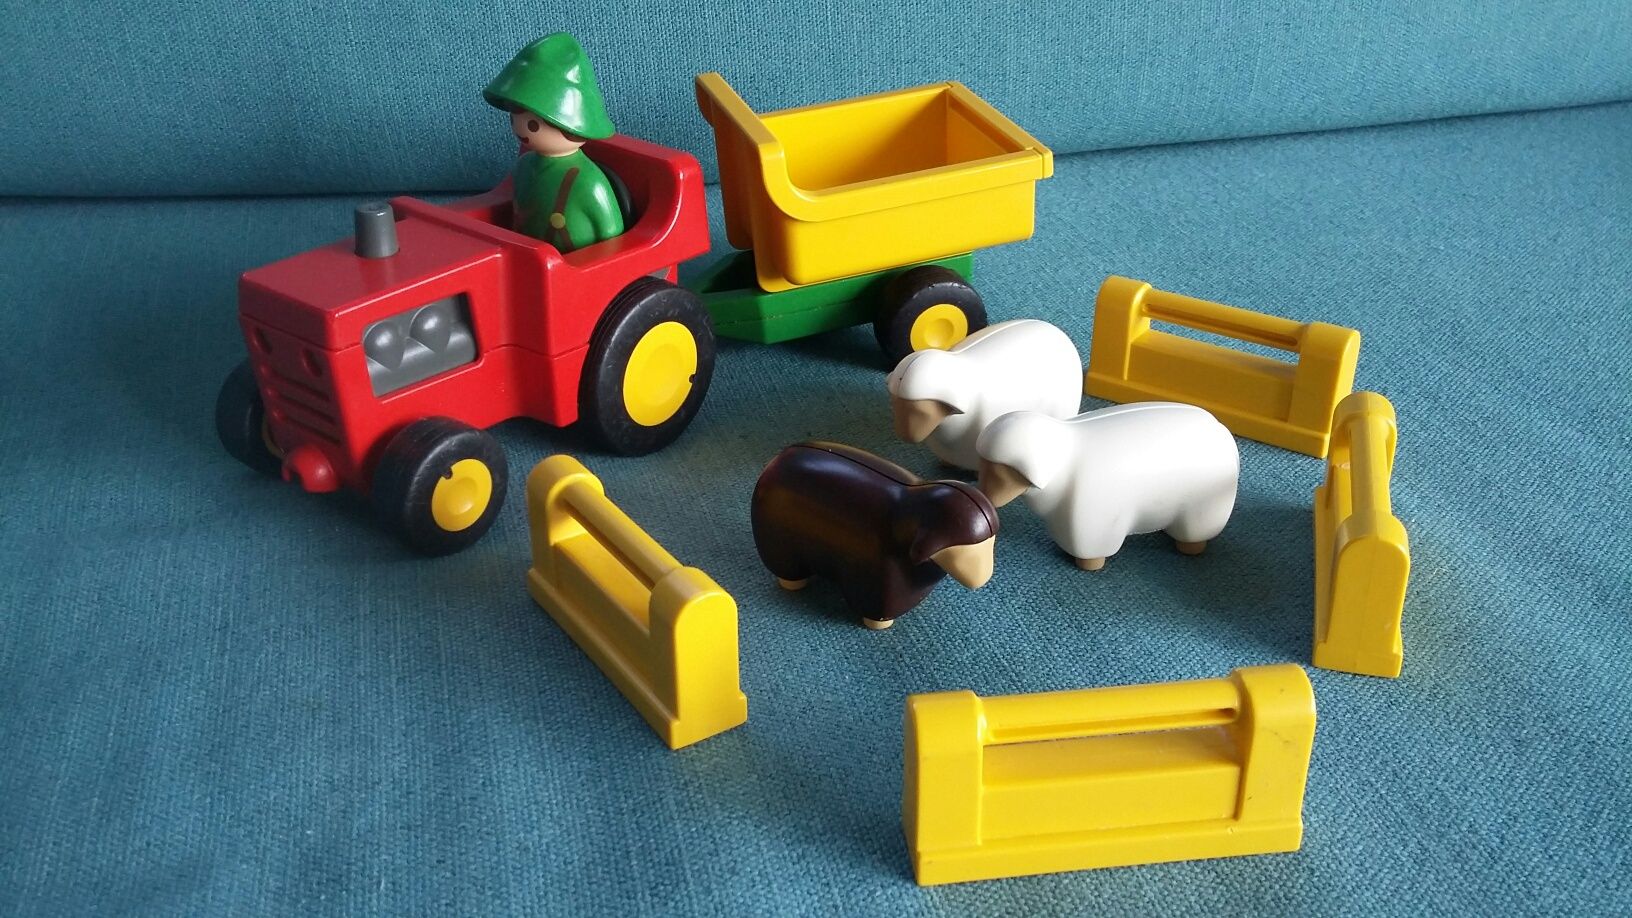 Zabawki PRL Playmobil wóz strażacki, traktor, farma